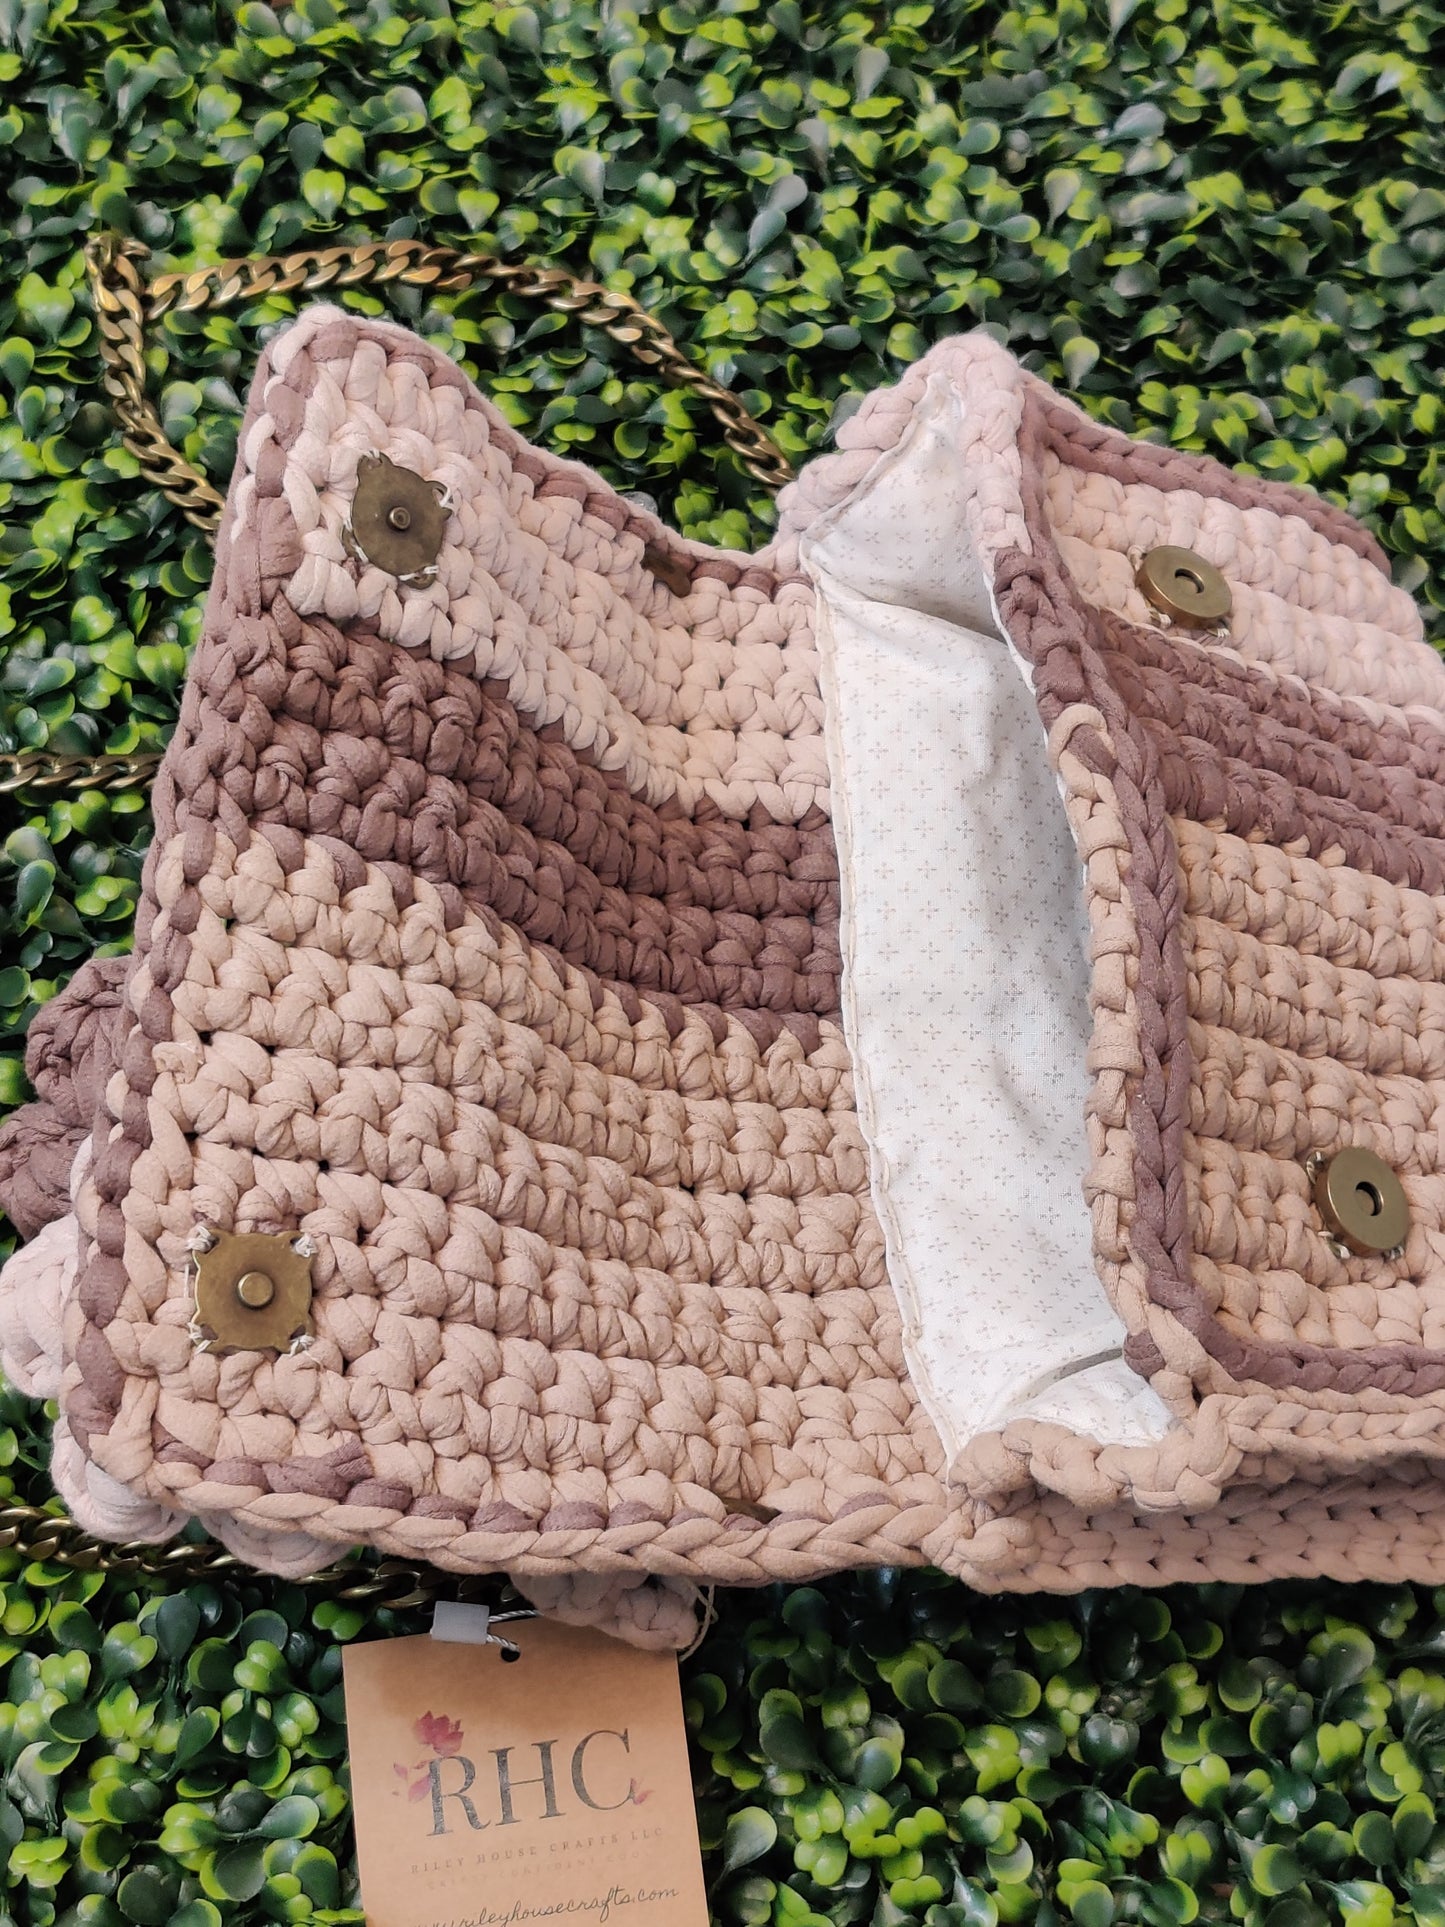 Daisy Crochet Bag